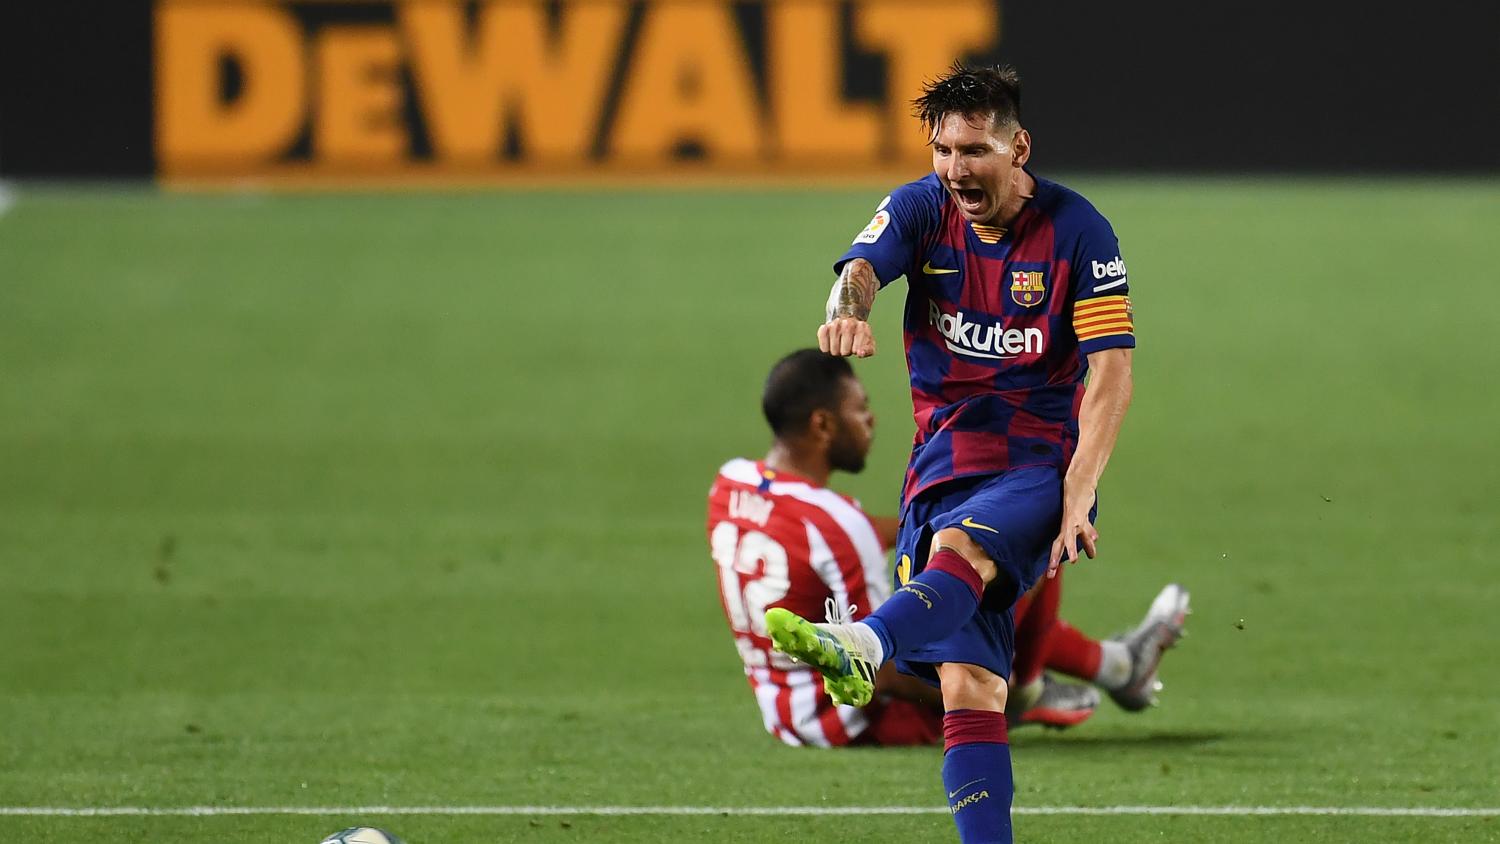 Afstem øge Fighter Barcelona vs Atletico Madrid Highlights: Messi Scores No. 700